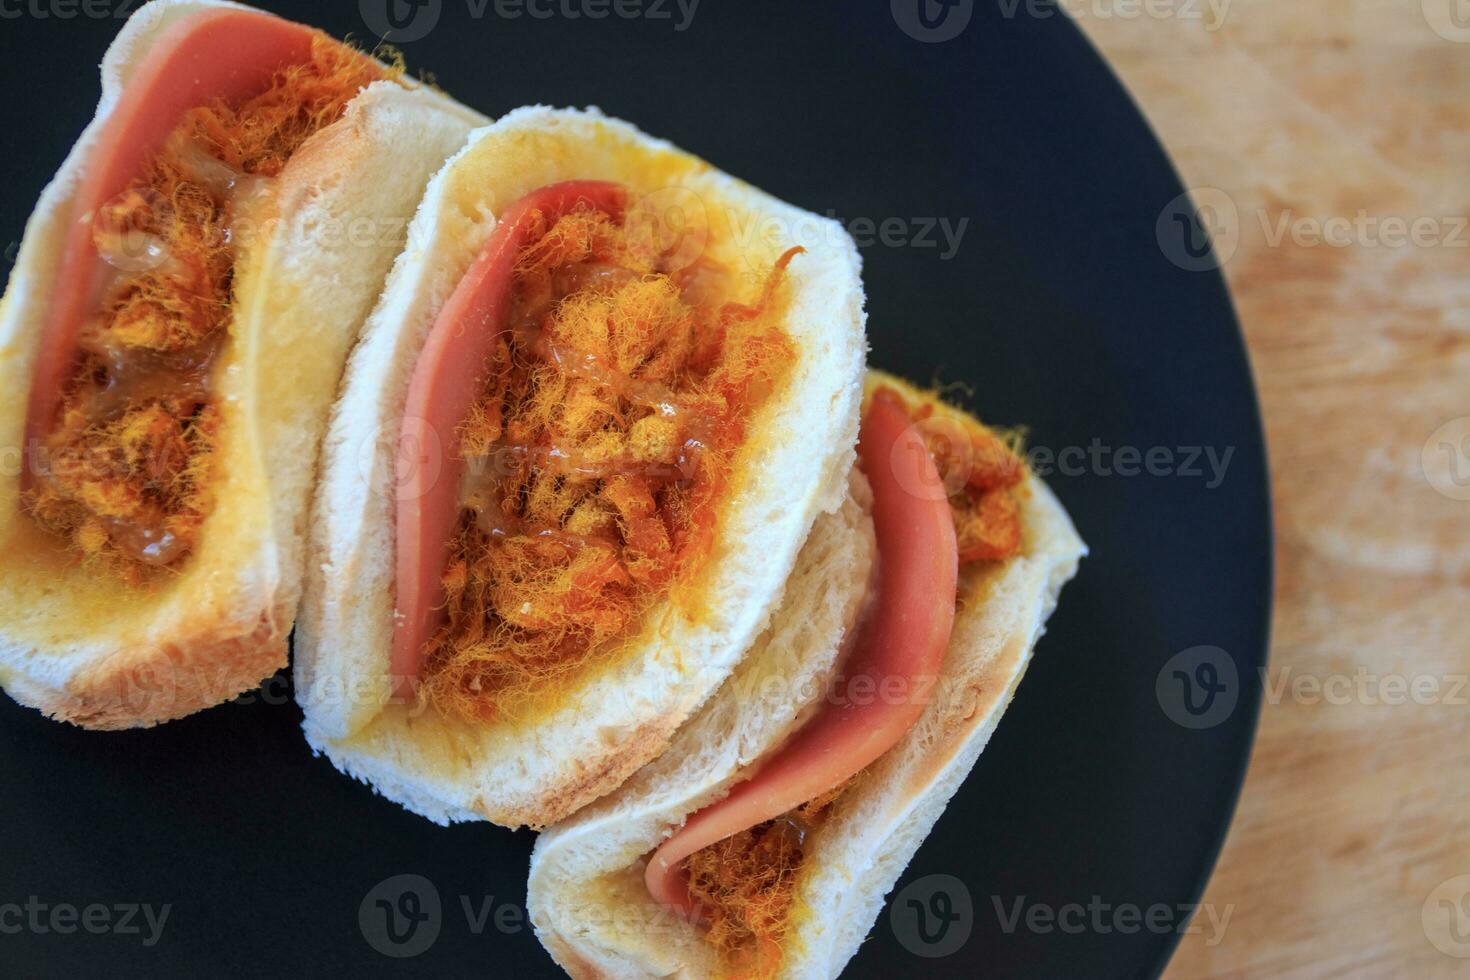 tradicional sándwiches, sedoso Cerdo y jamón ensalada vendaje foto